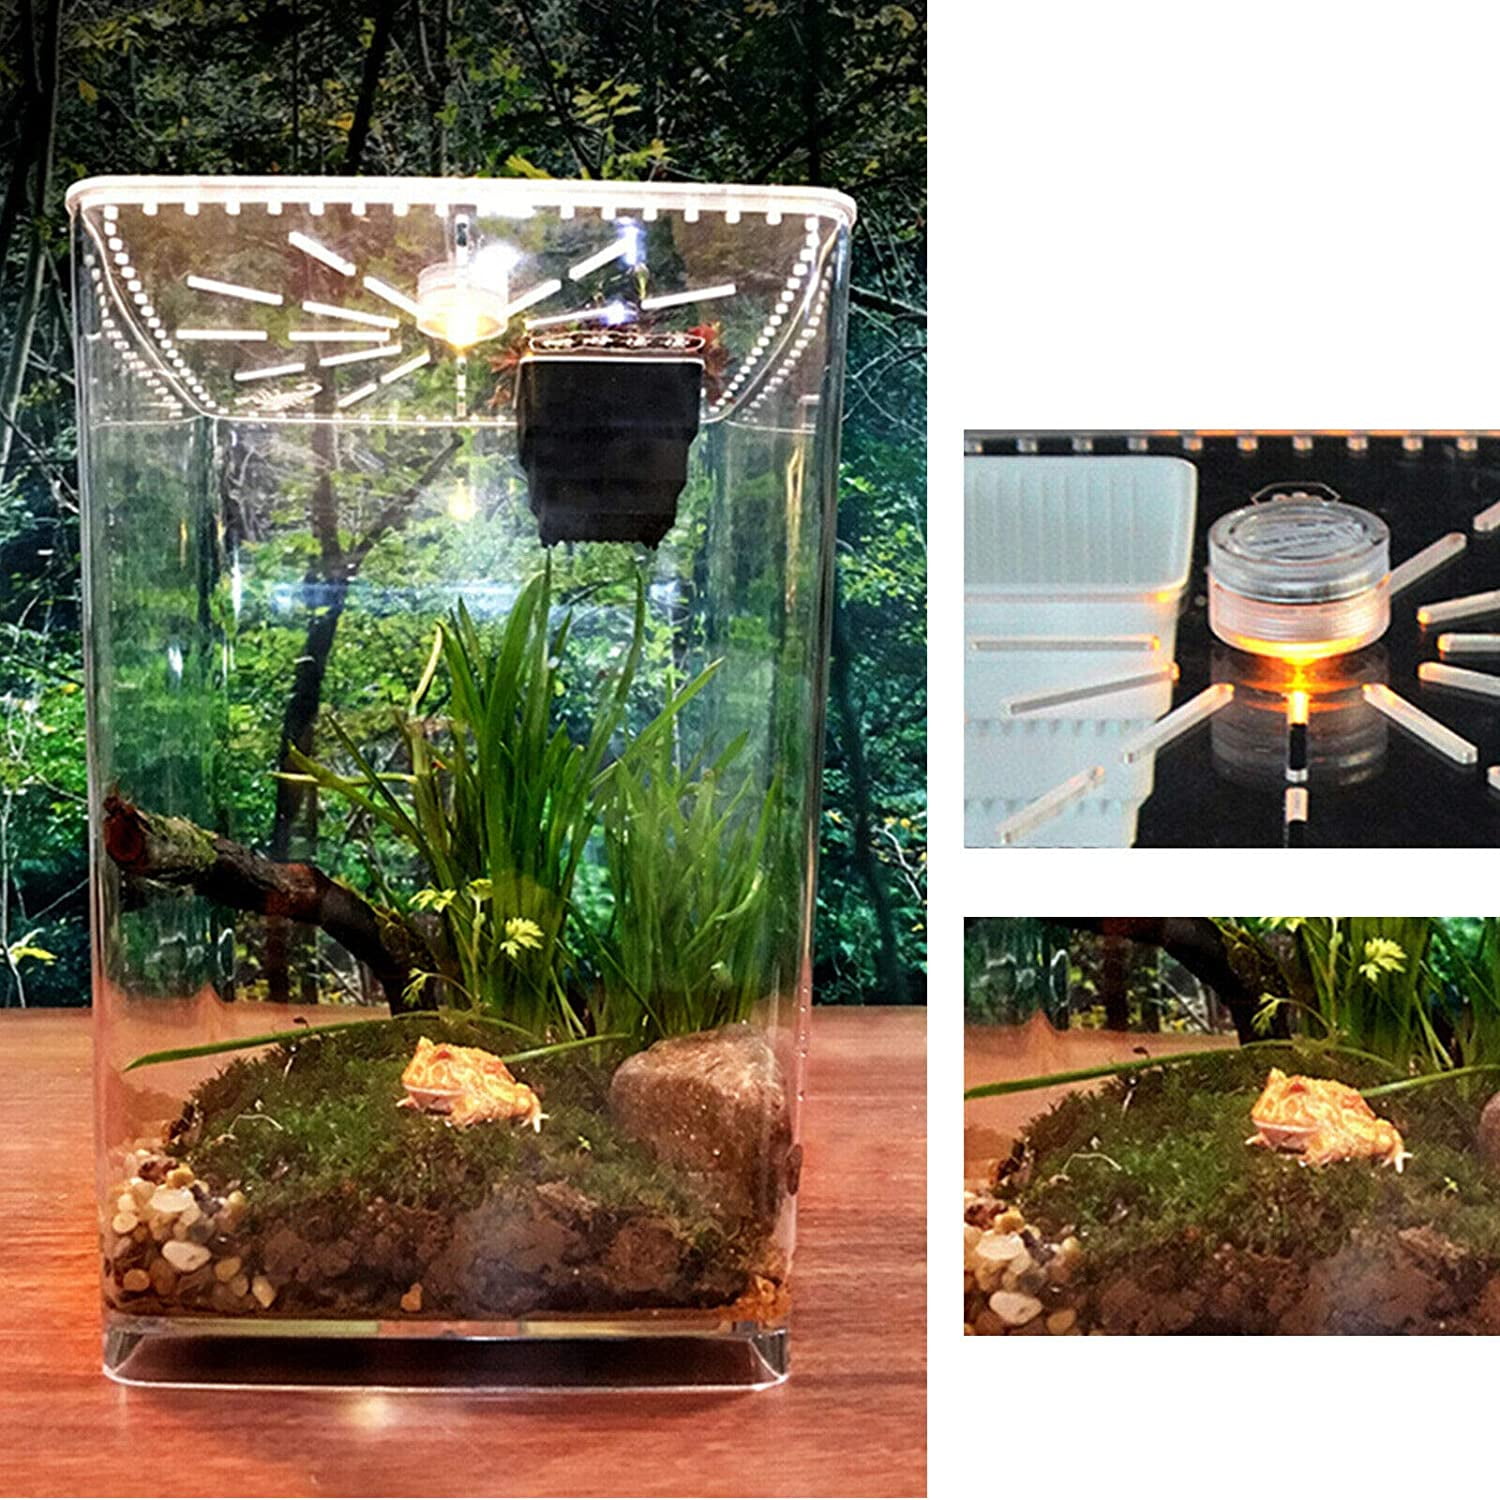 Small Acrylic Enclosure Terrarium Supplies LED Tarantula Scorpion Reptile  Tank